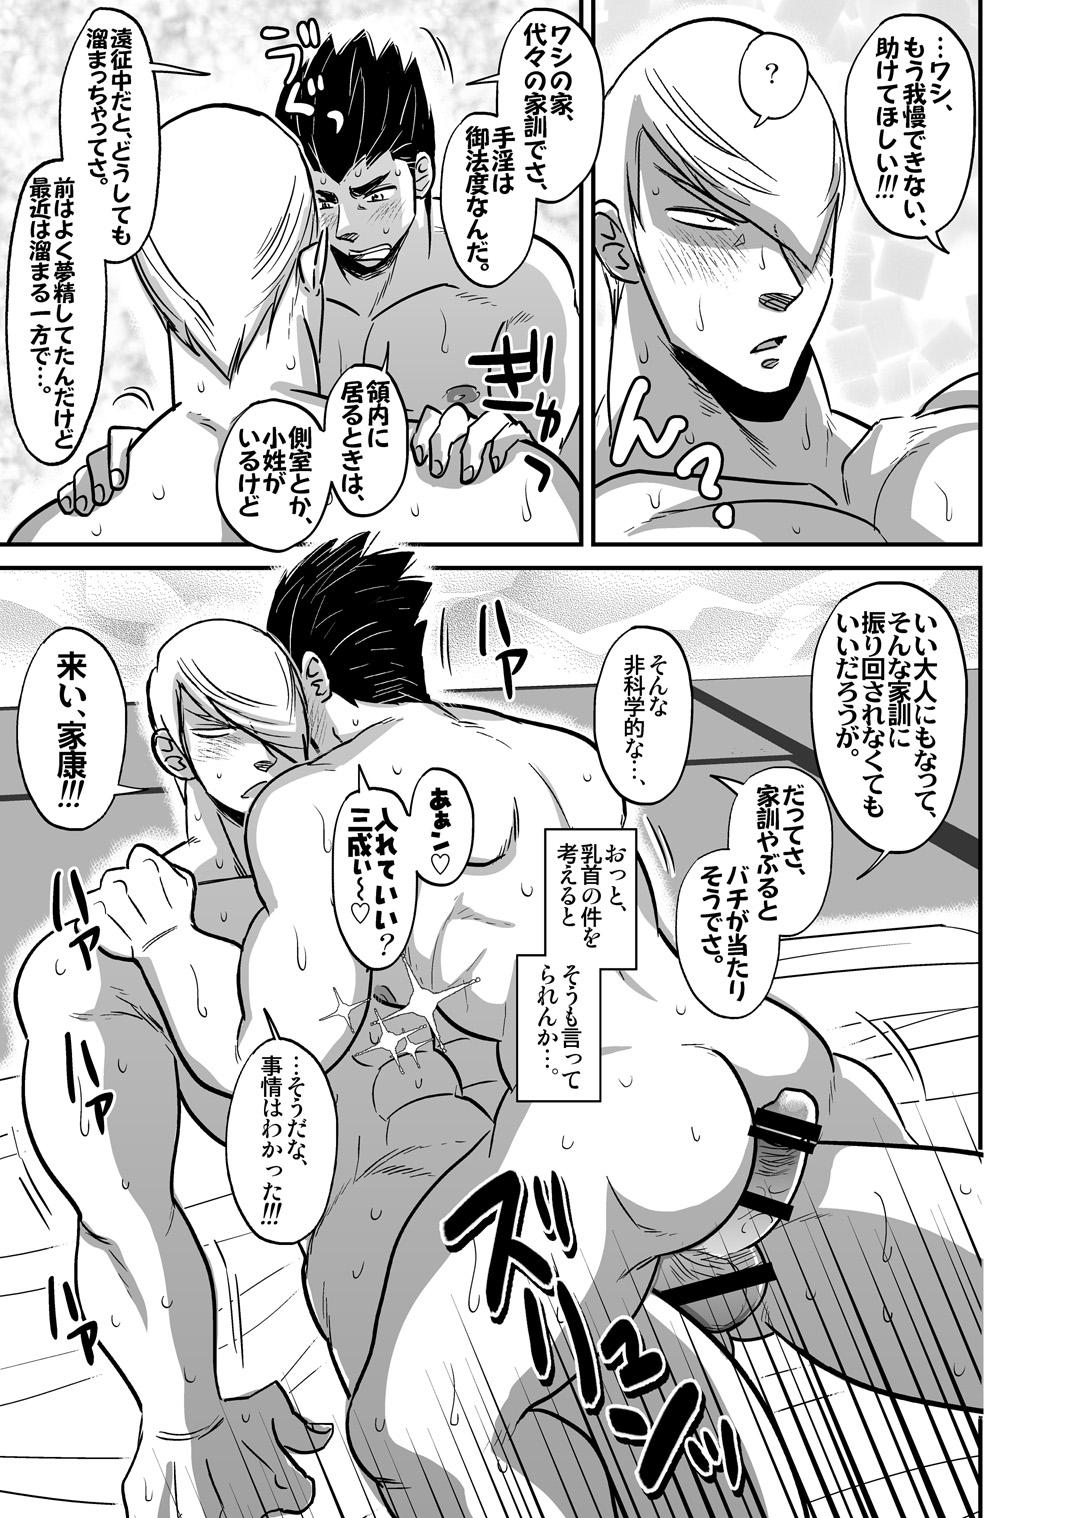 Anal Creampie Multi-HOMO manga at home - Sengoku basara Blowing - Page 10